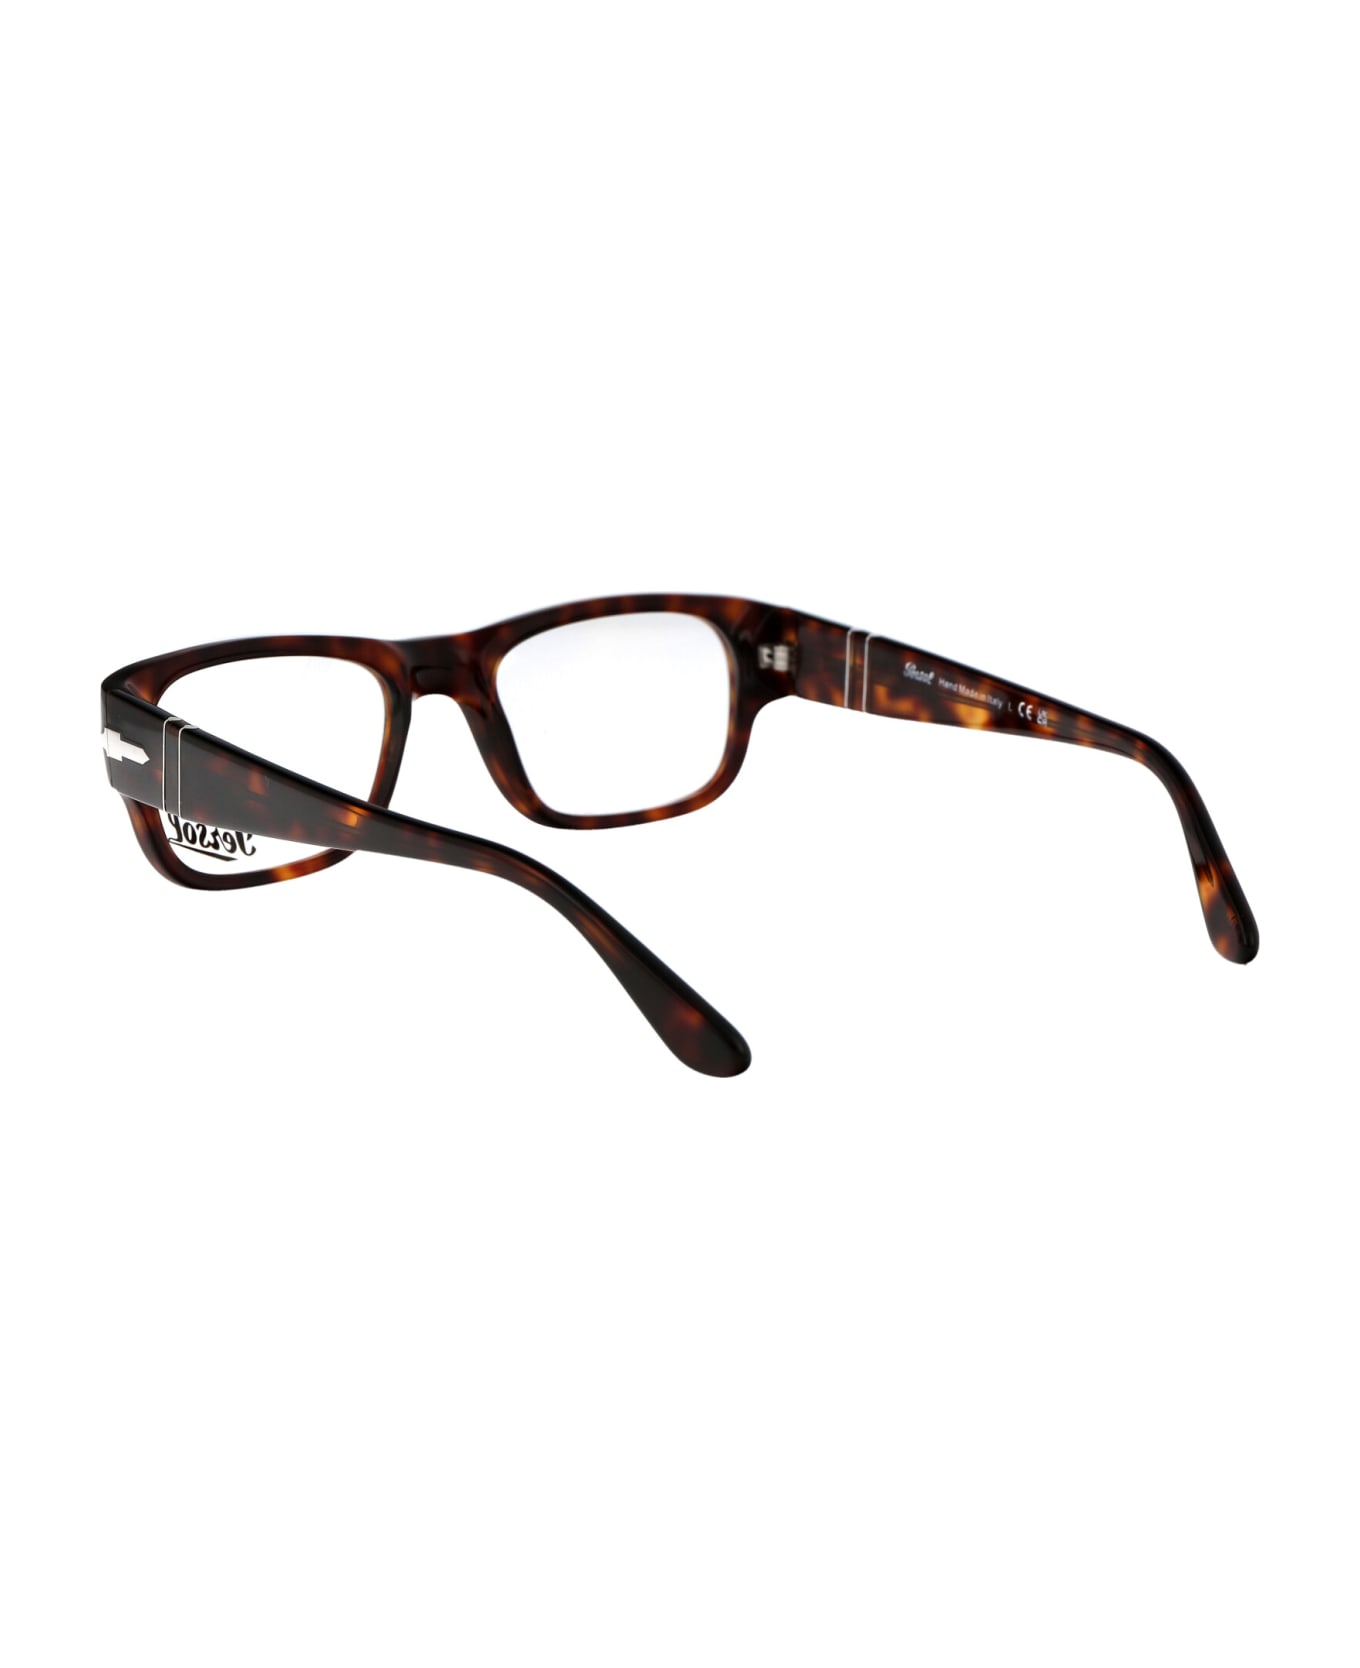 Persol 0po3324v Glasses - 24 HAVANA